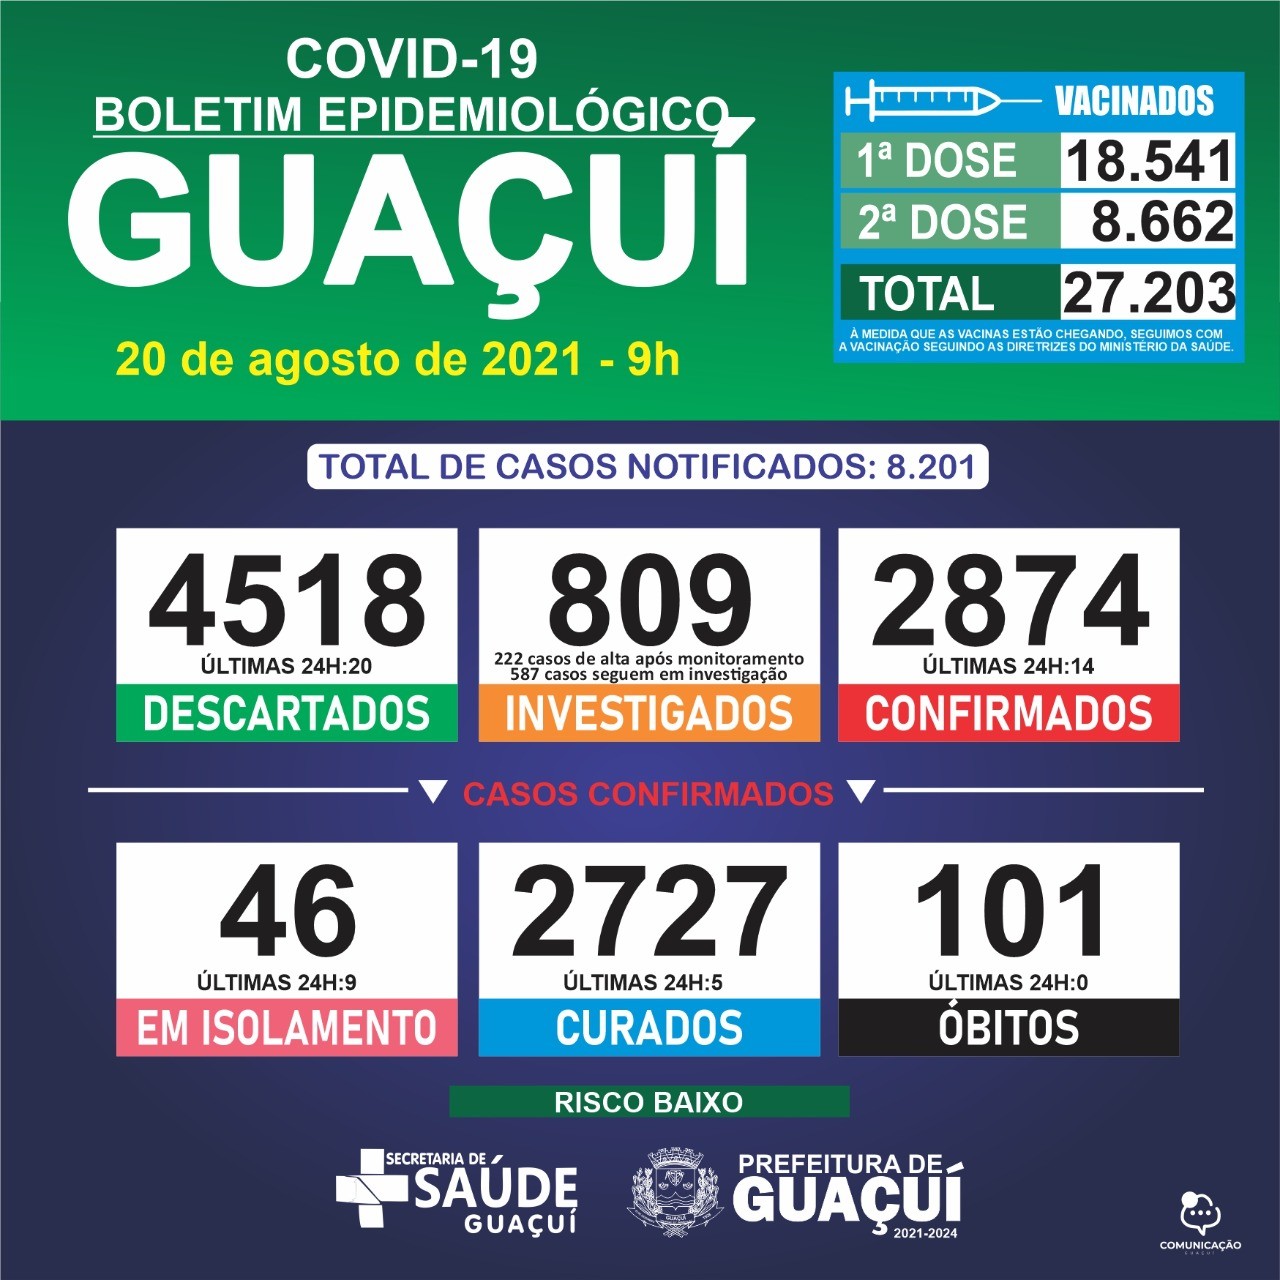 Boletim Epidemiológico 20/08/21: Guaçuí registra 14 casos confirmados e 5 curados nas últimas 24 horas